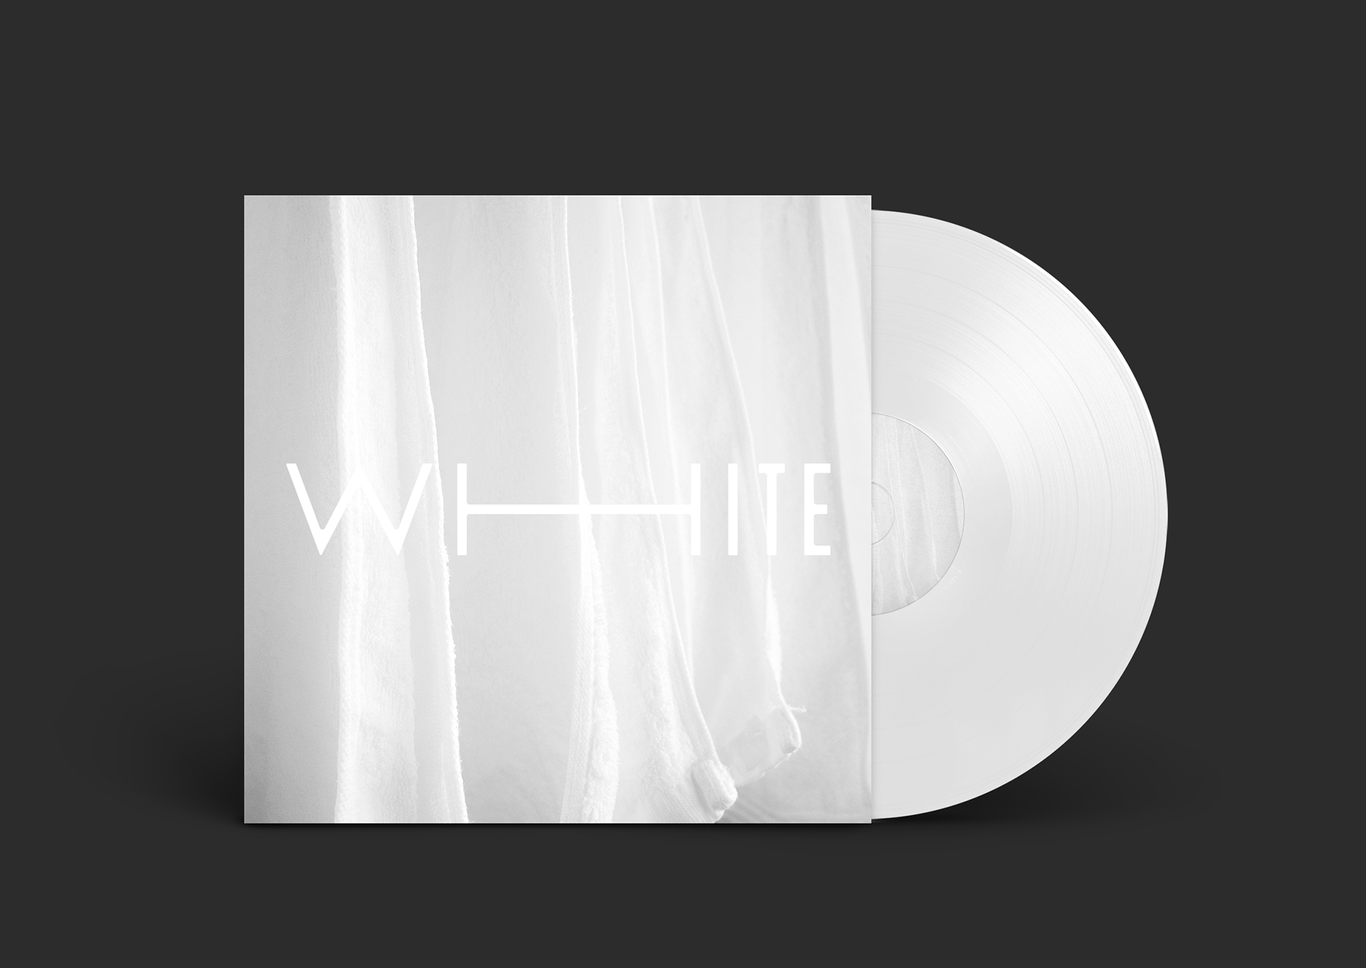 Белый — это вымышленная серия пластинок